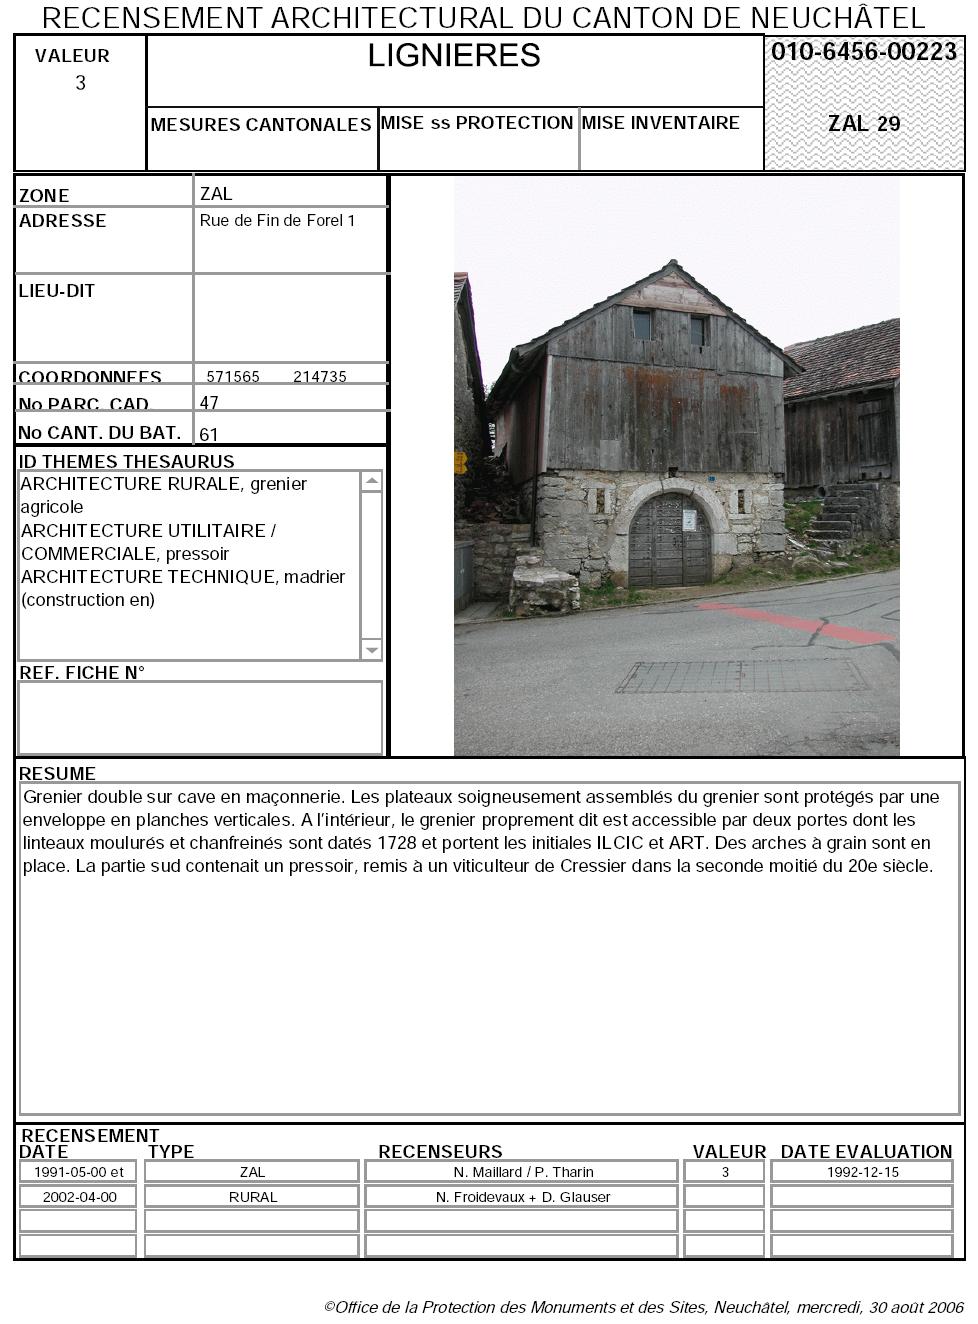 Recensement architectural du canton de Neuchâtel: Fiche 010-6456-00223